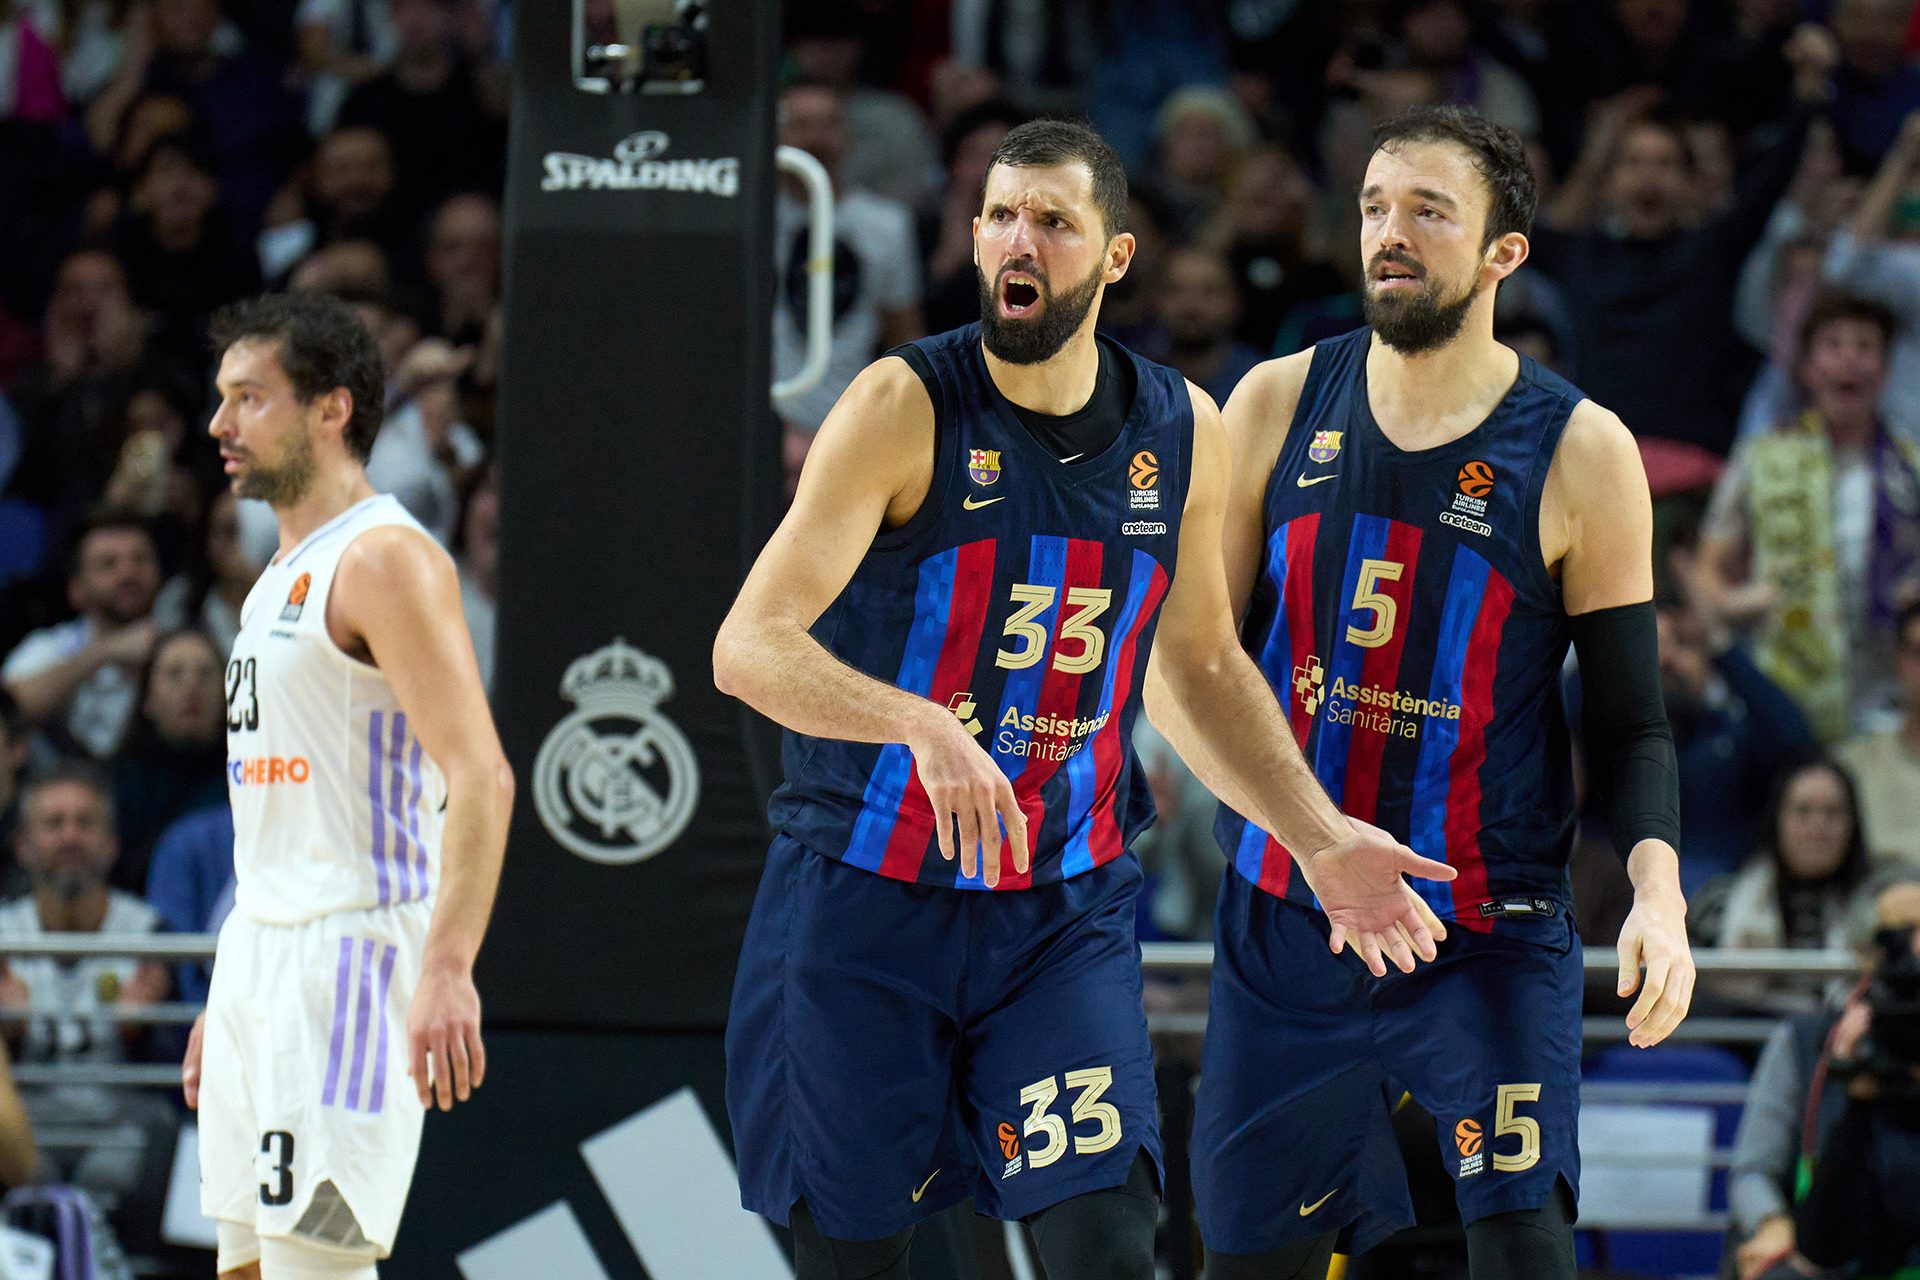 Baloncesto: Barcelona, adiós a la Euroliga de manos del Real Madrid